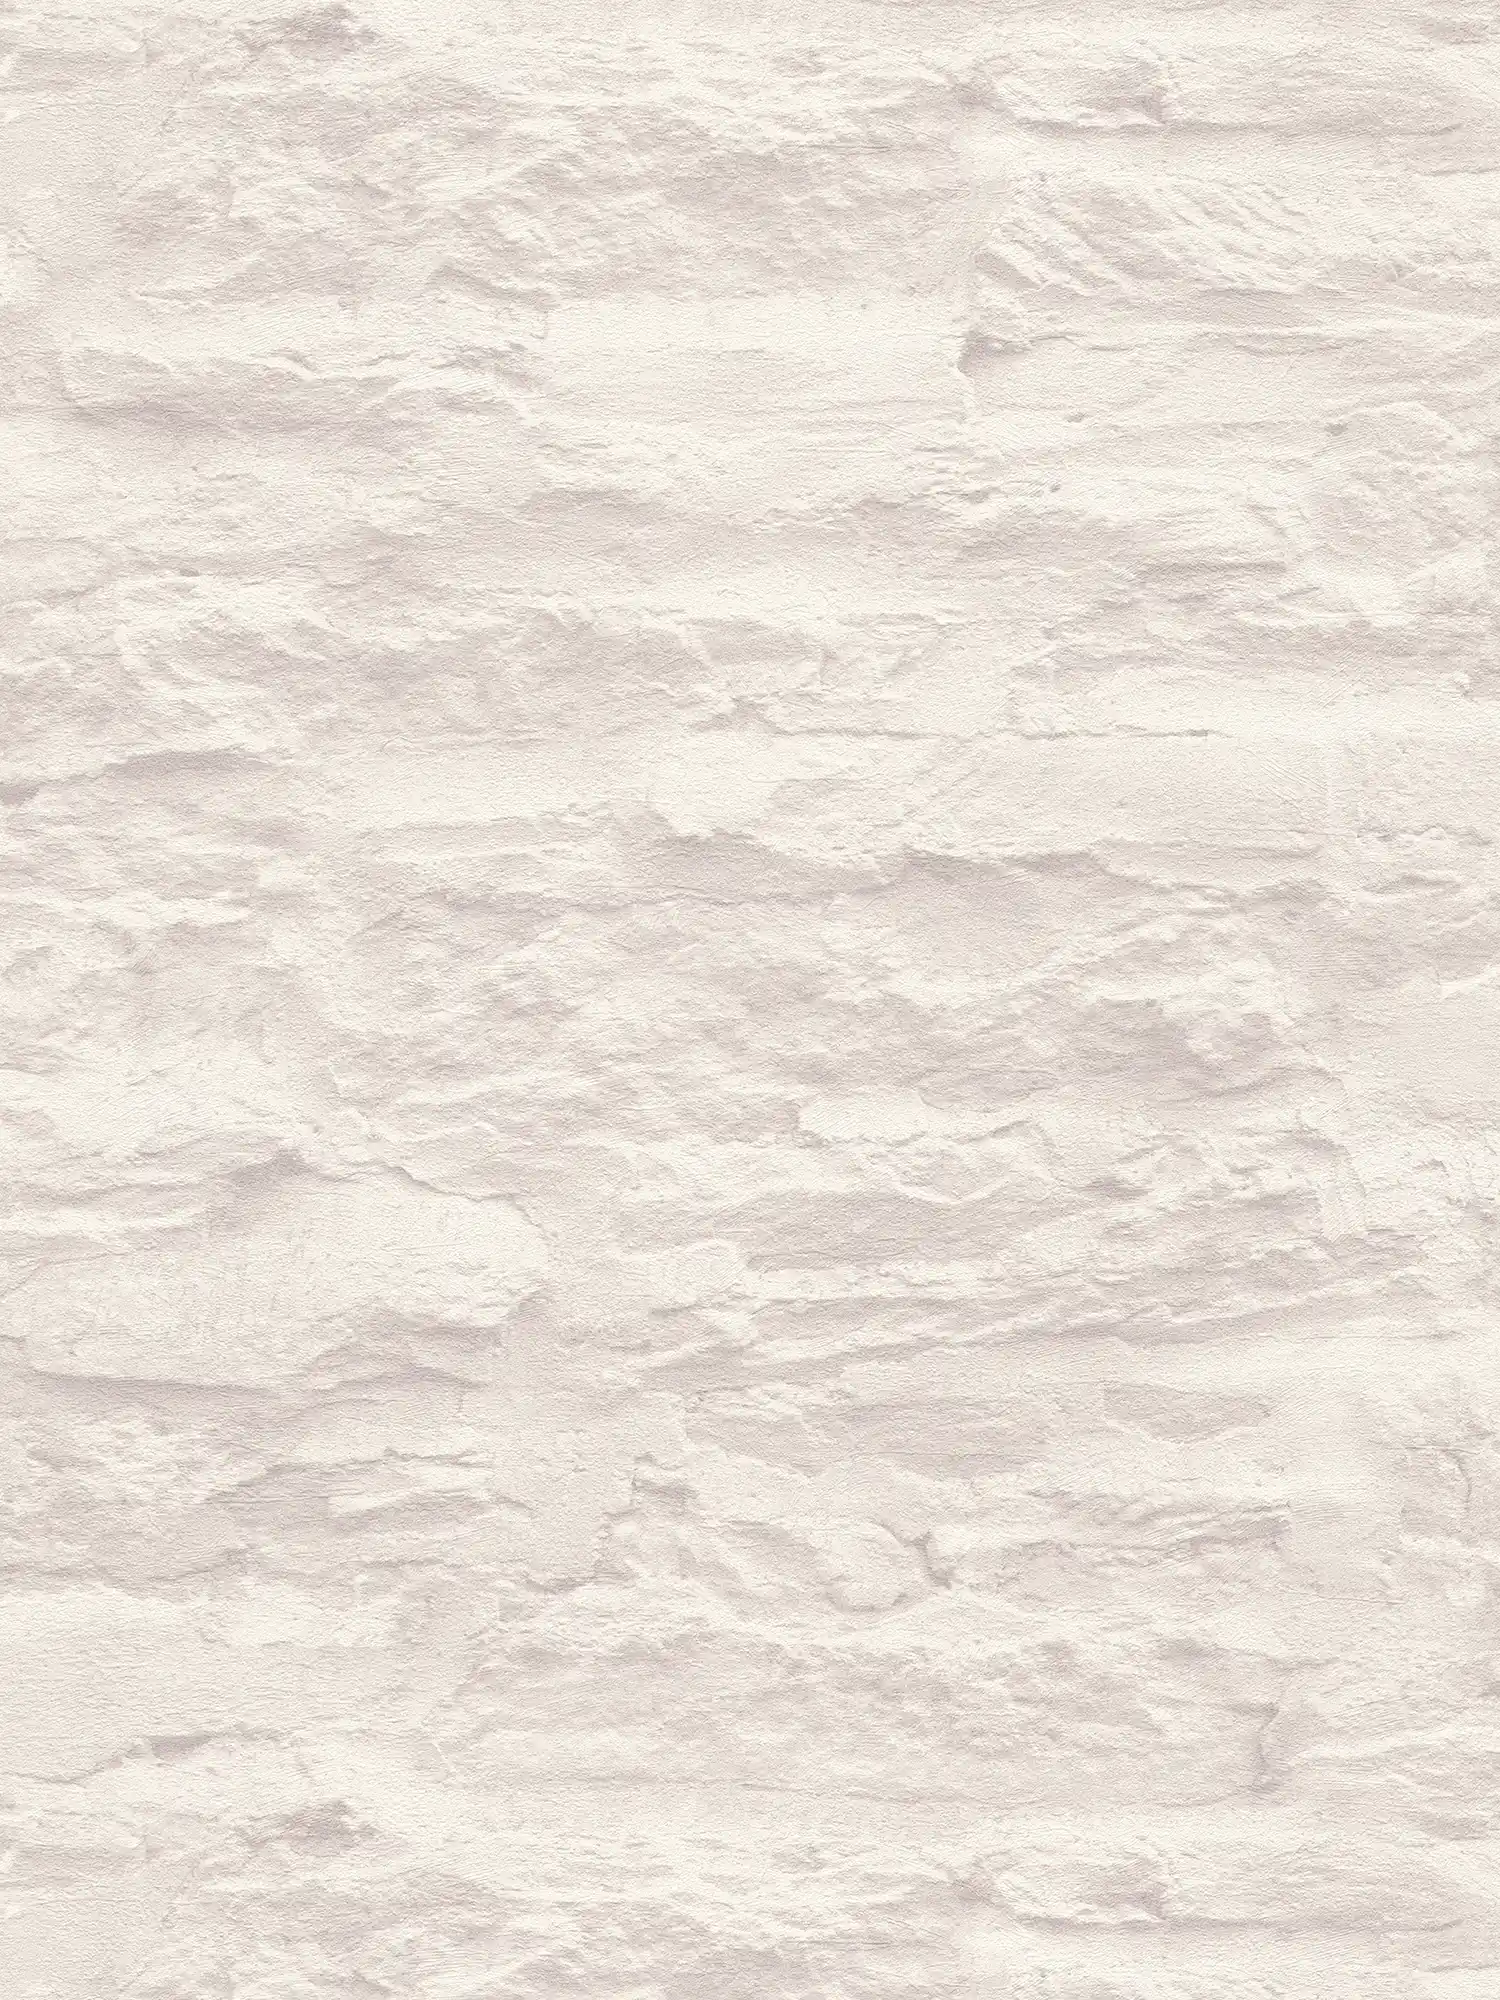 Licht vliesbehang in wandoptiek met natuursteen & gips - crème, wit
